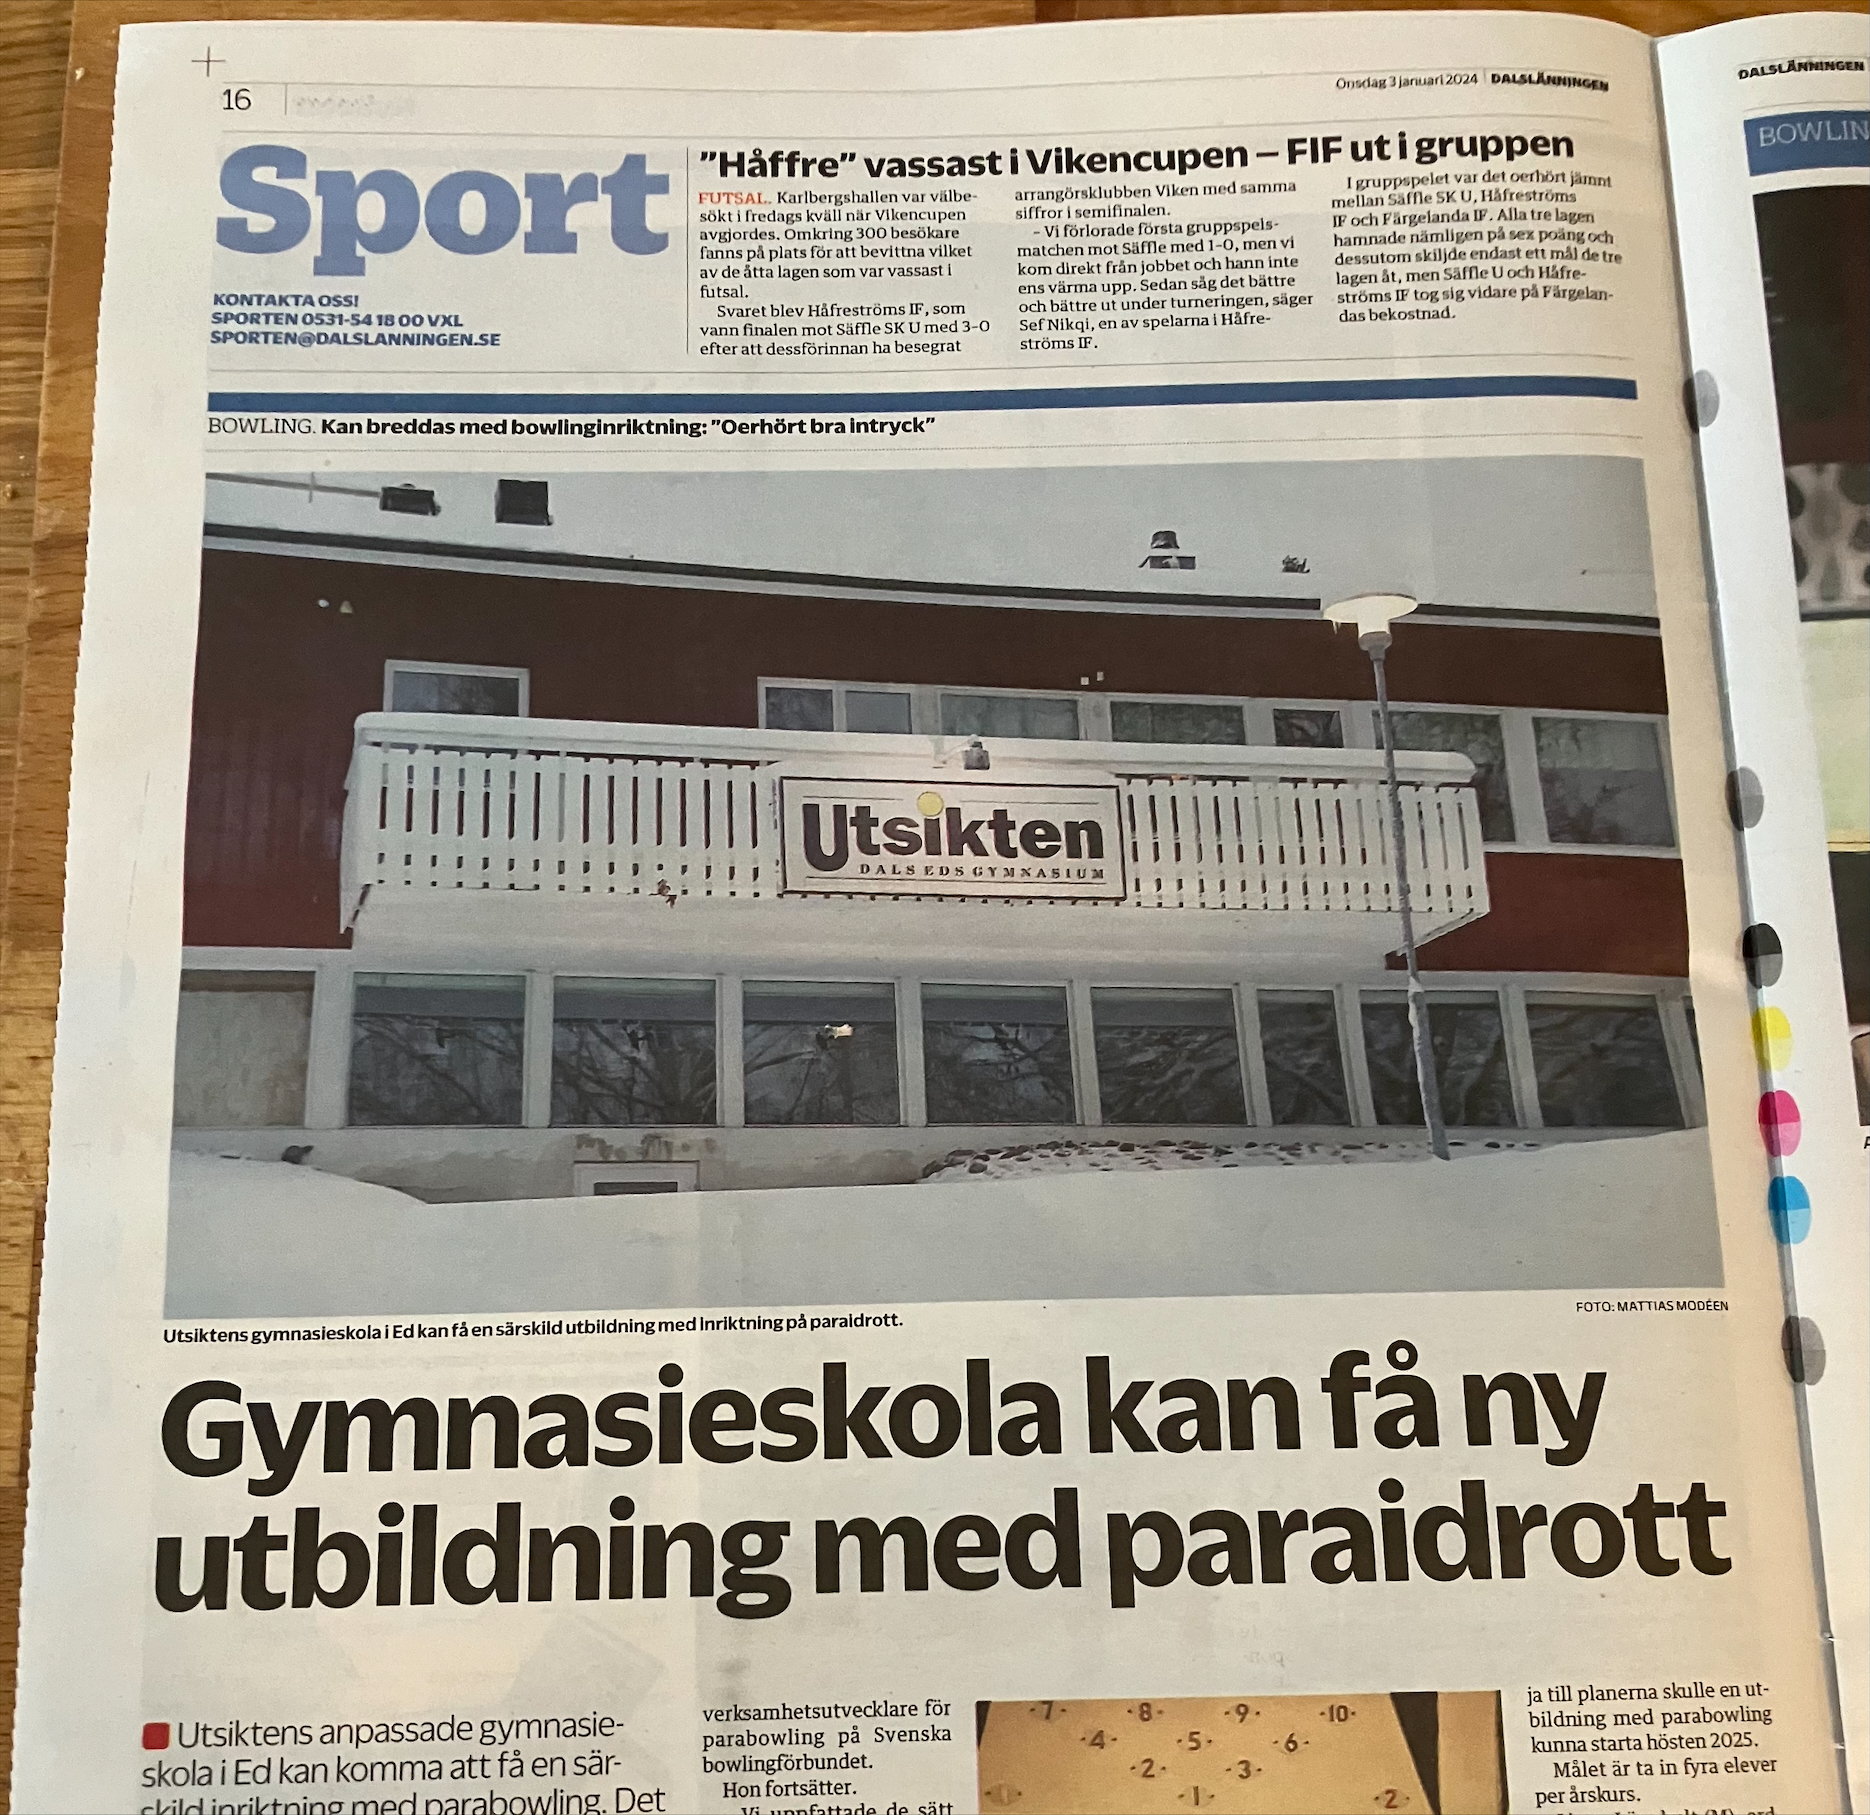 Bild på artikel med rubriken "Gymnasieskola kan få ny utbildning med paraidrott" i tidningen Dalslänningen den 3 januari 2024. Foto Anders Johannesson. Bilden är beskuren. Publiceras med tillstånd av Dalslänningen.